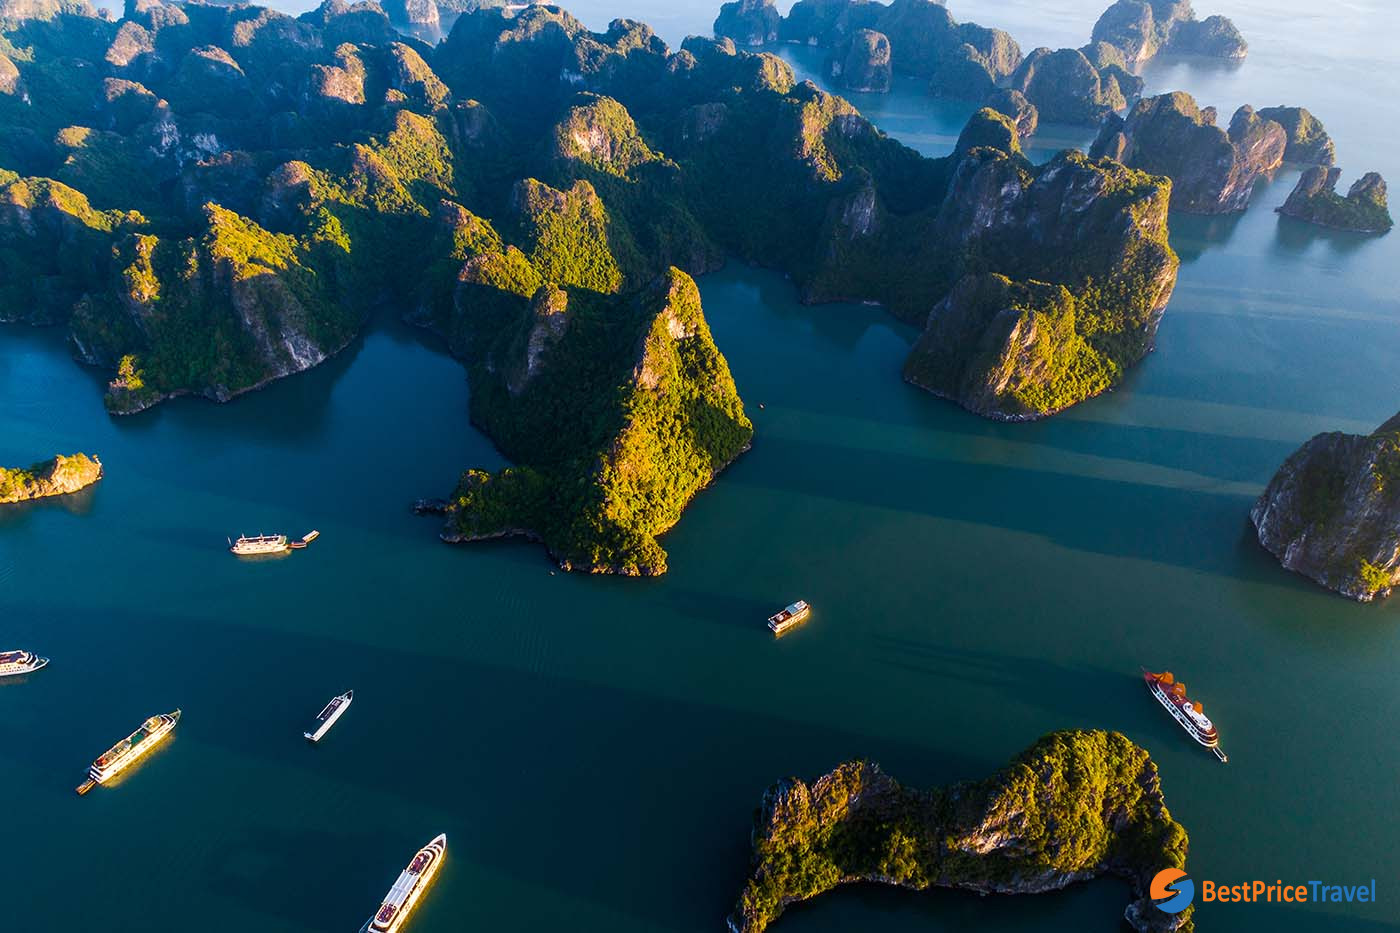 Beauty of Lan Ha Bay from sky